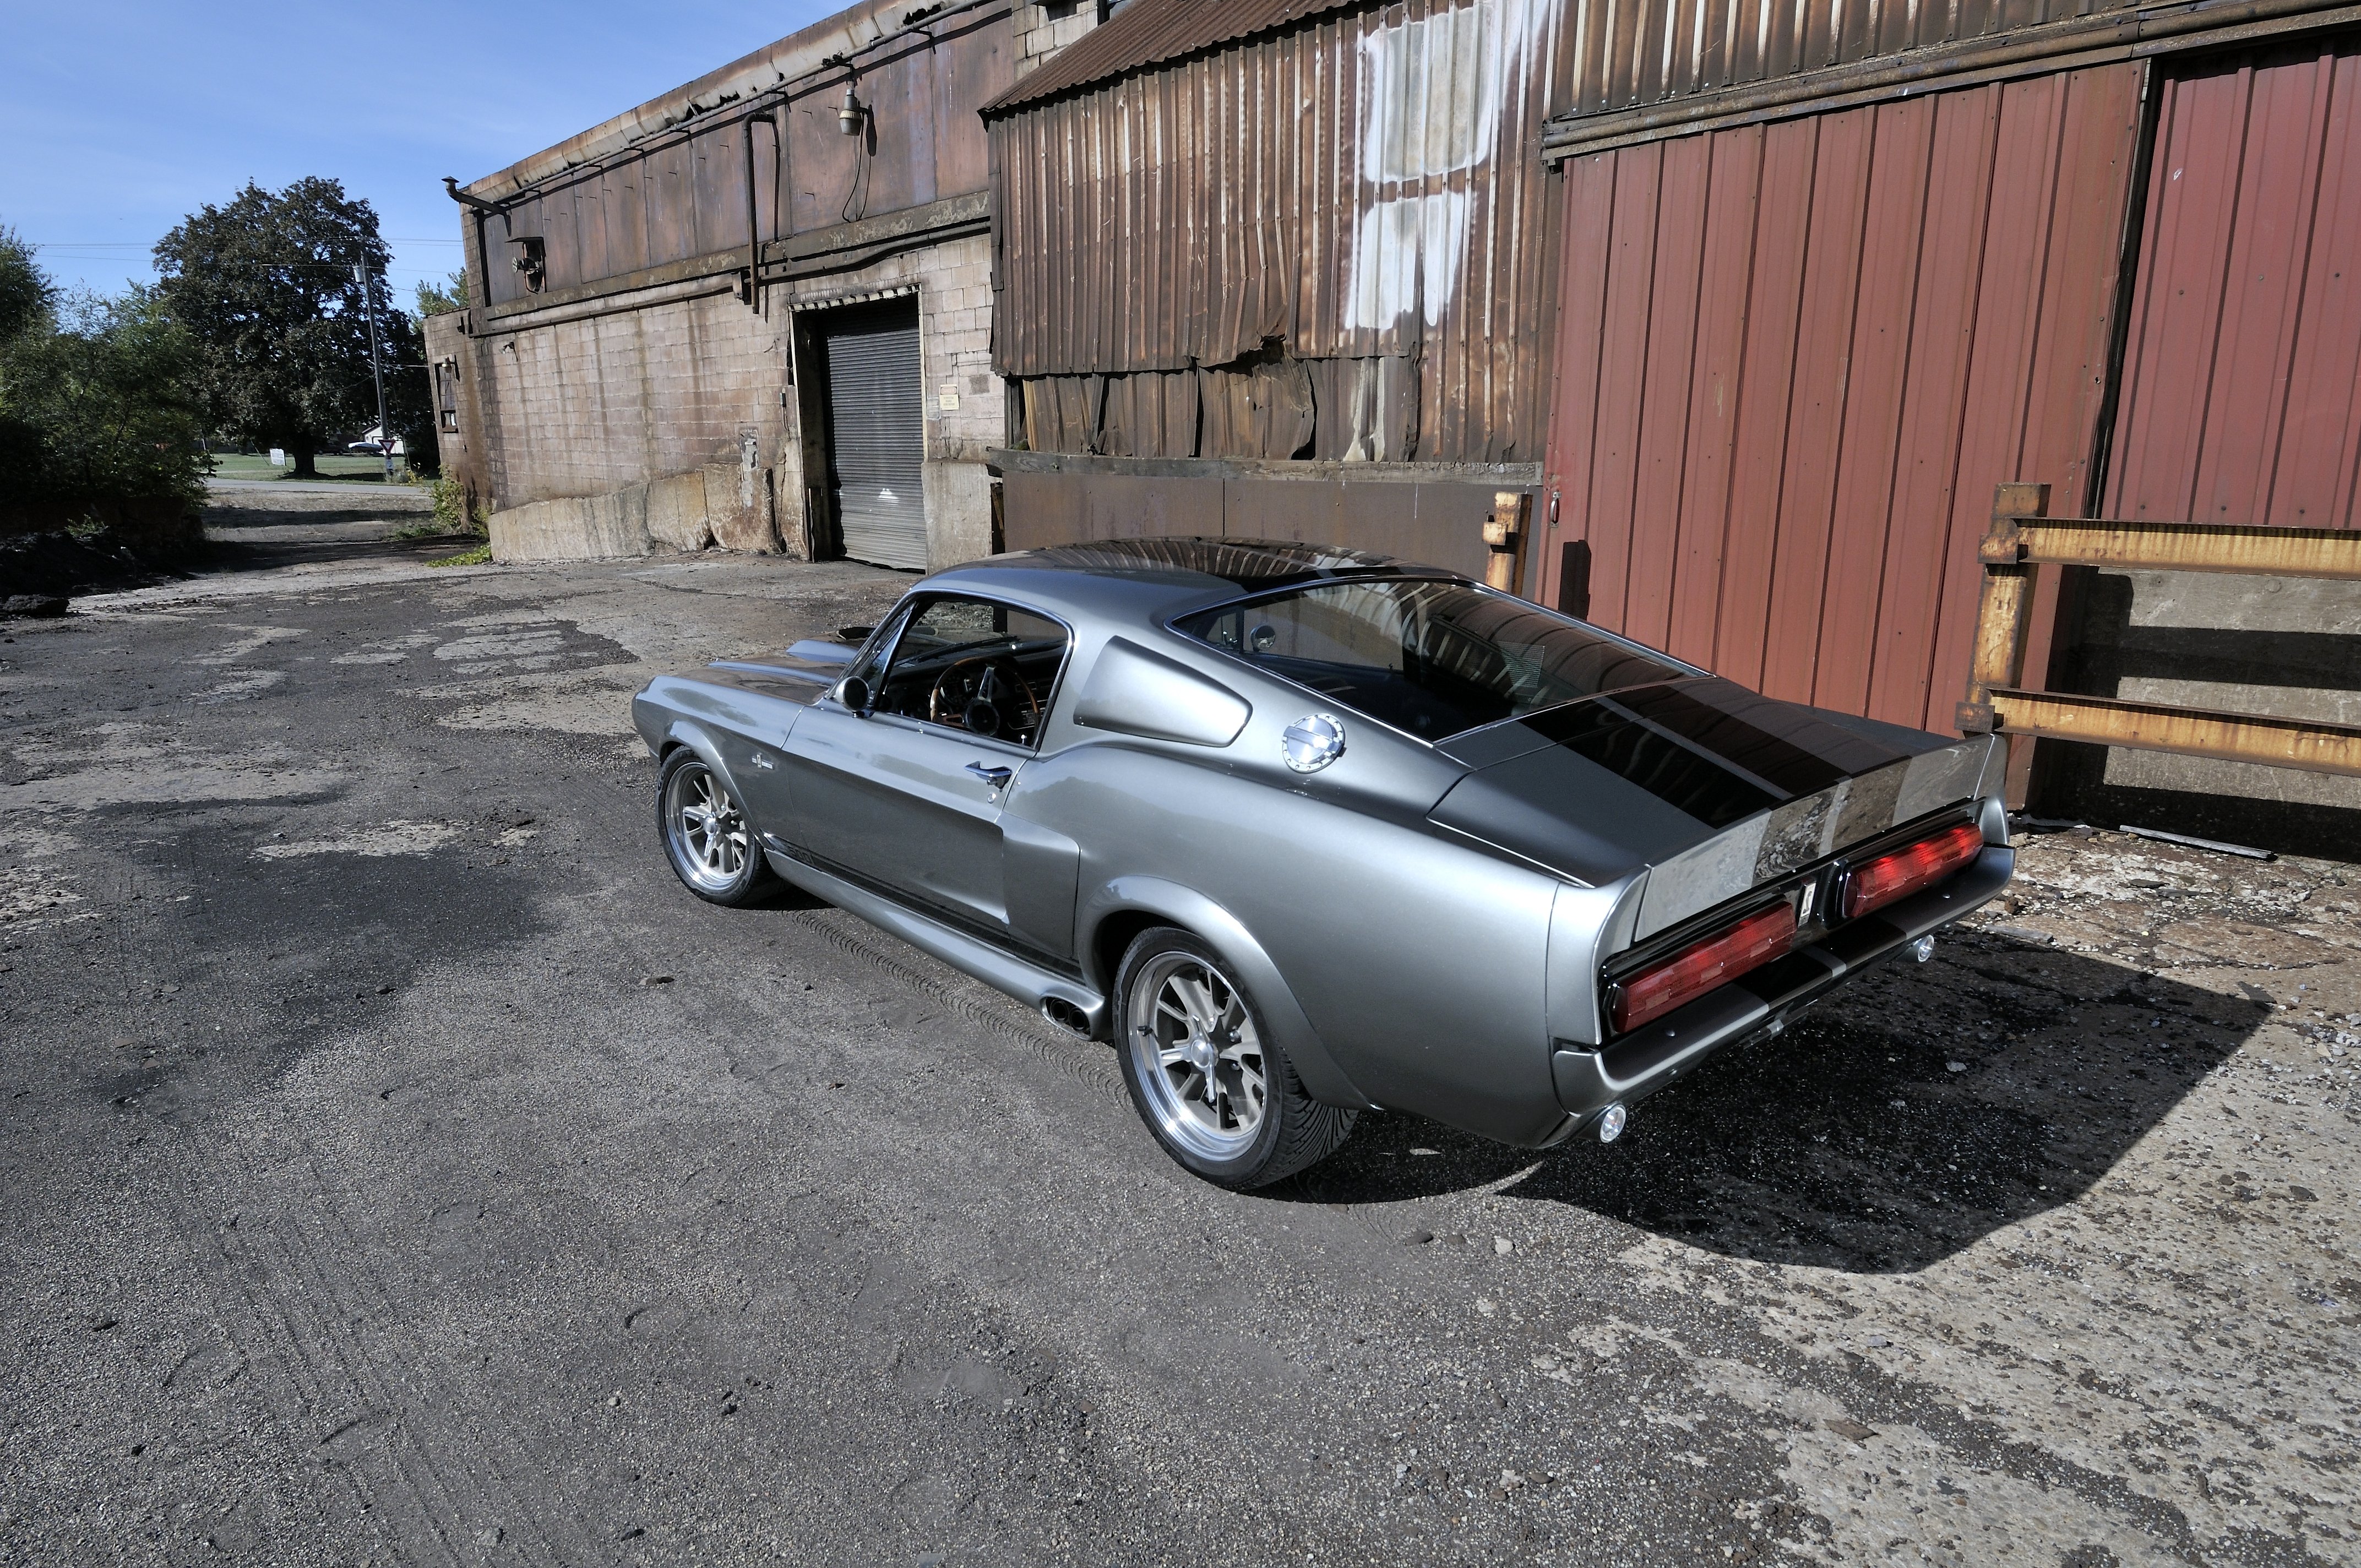 1967 Mustang Eleanor Burnout